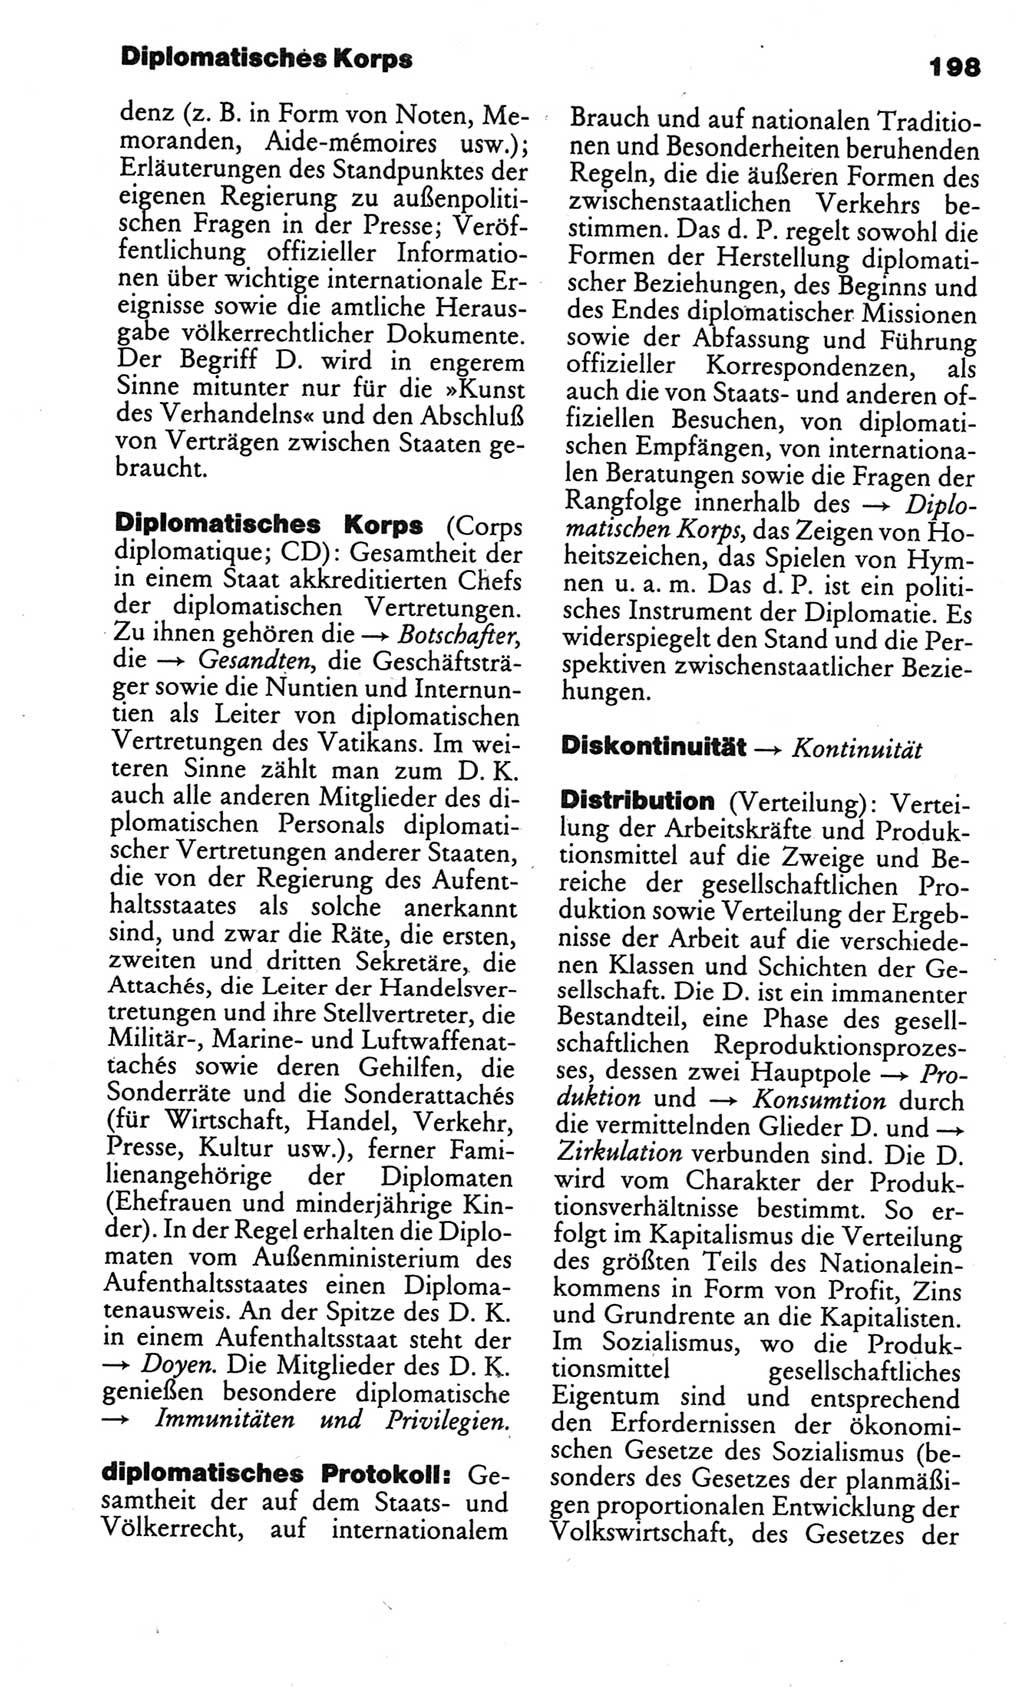 Kleines politisches Wörterbuch [Deutsche Demokratische Republik (DDR)] 1986, Seite 198 (Kl. pol. Wb. DDR 1986, S. 198)